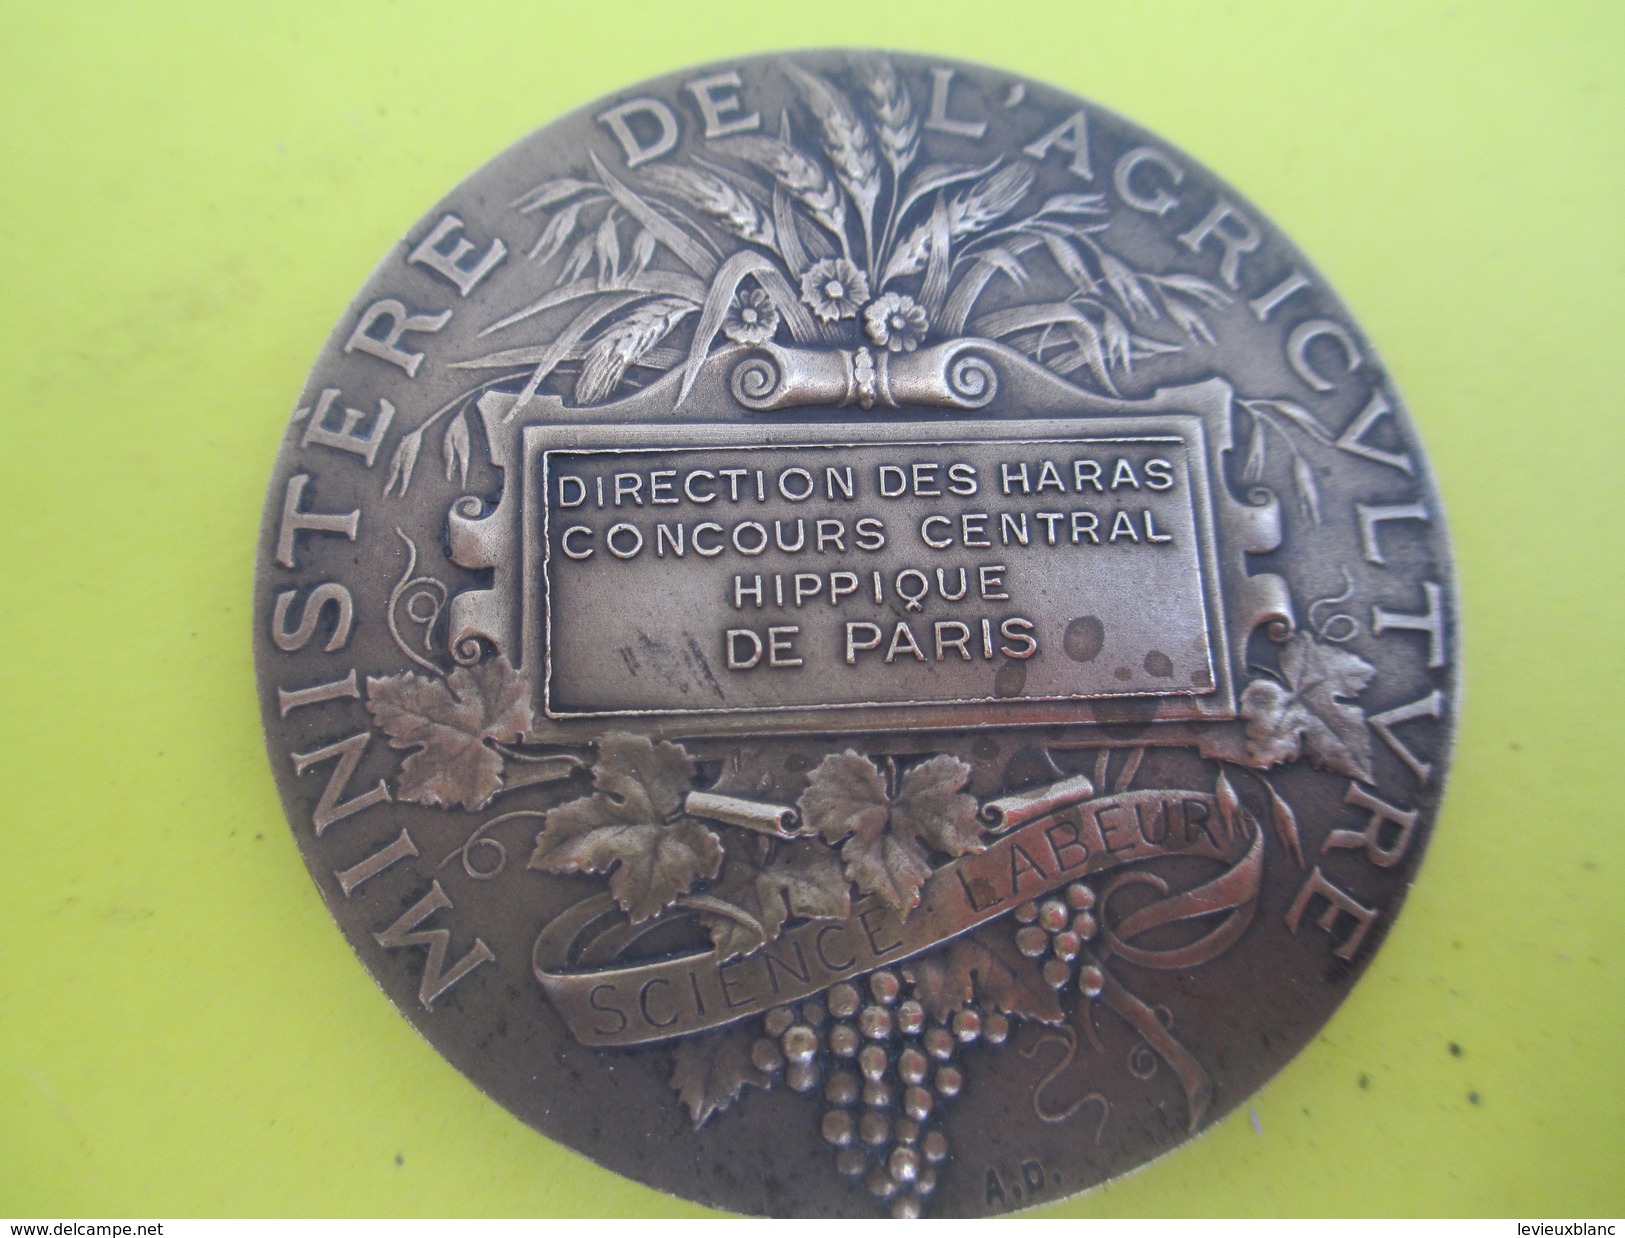 Médaille De Table/Minist. De L'Agric/Direction Des Haras/Concours Central Hippique/Paris/Alphée DUBOIS/Vers 1920  SPO214 - Reiten